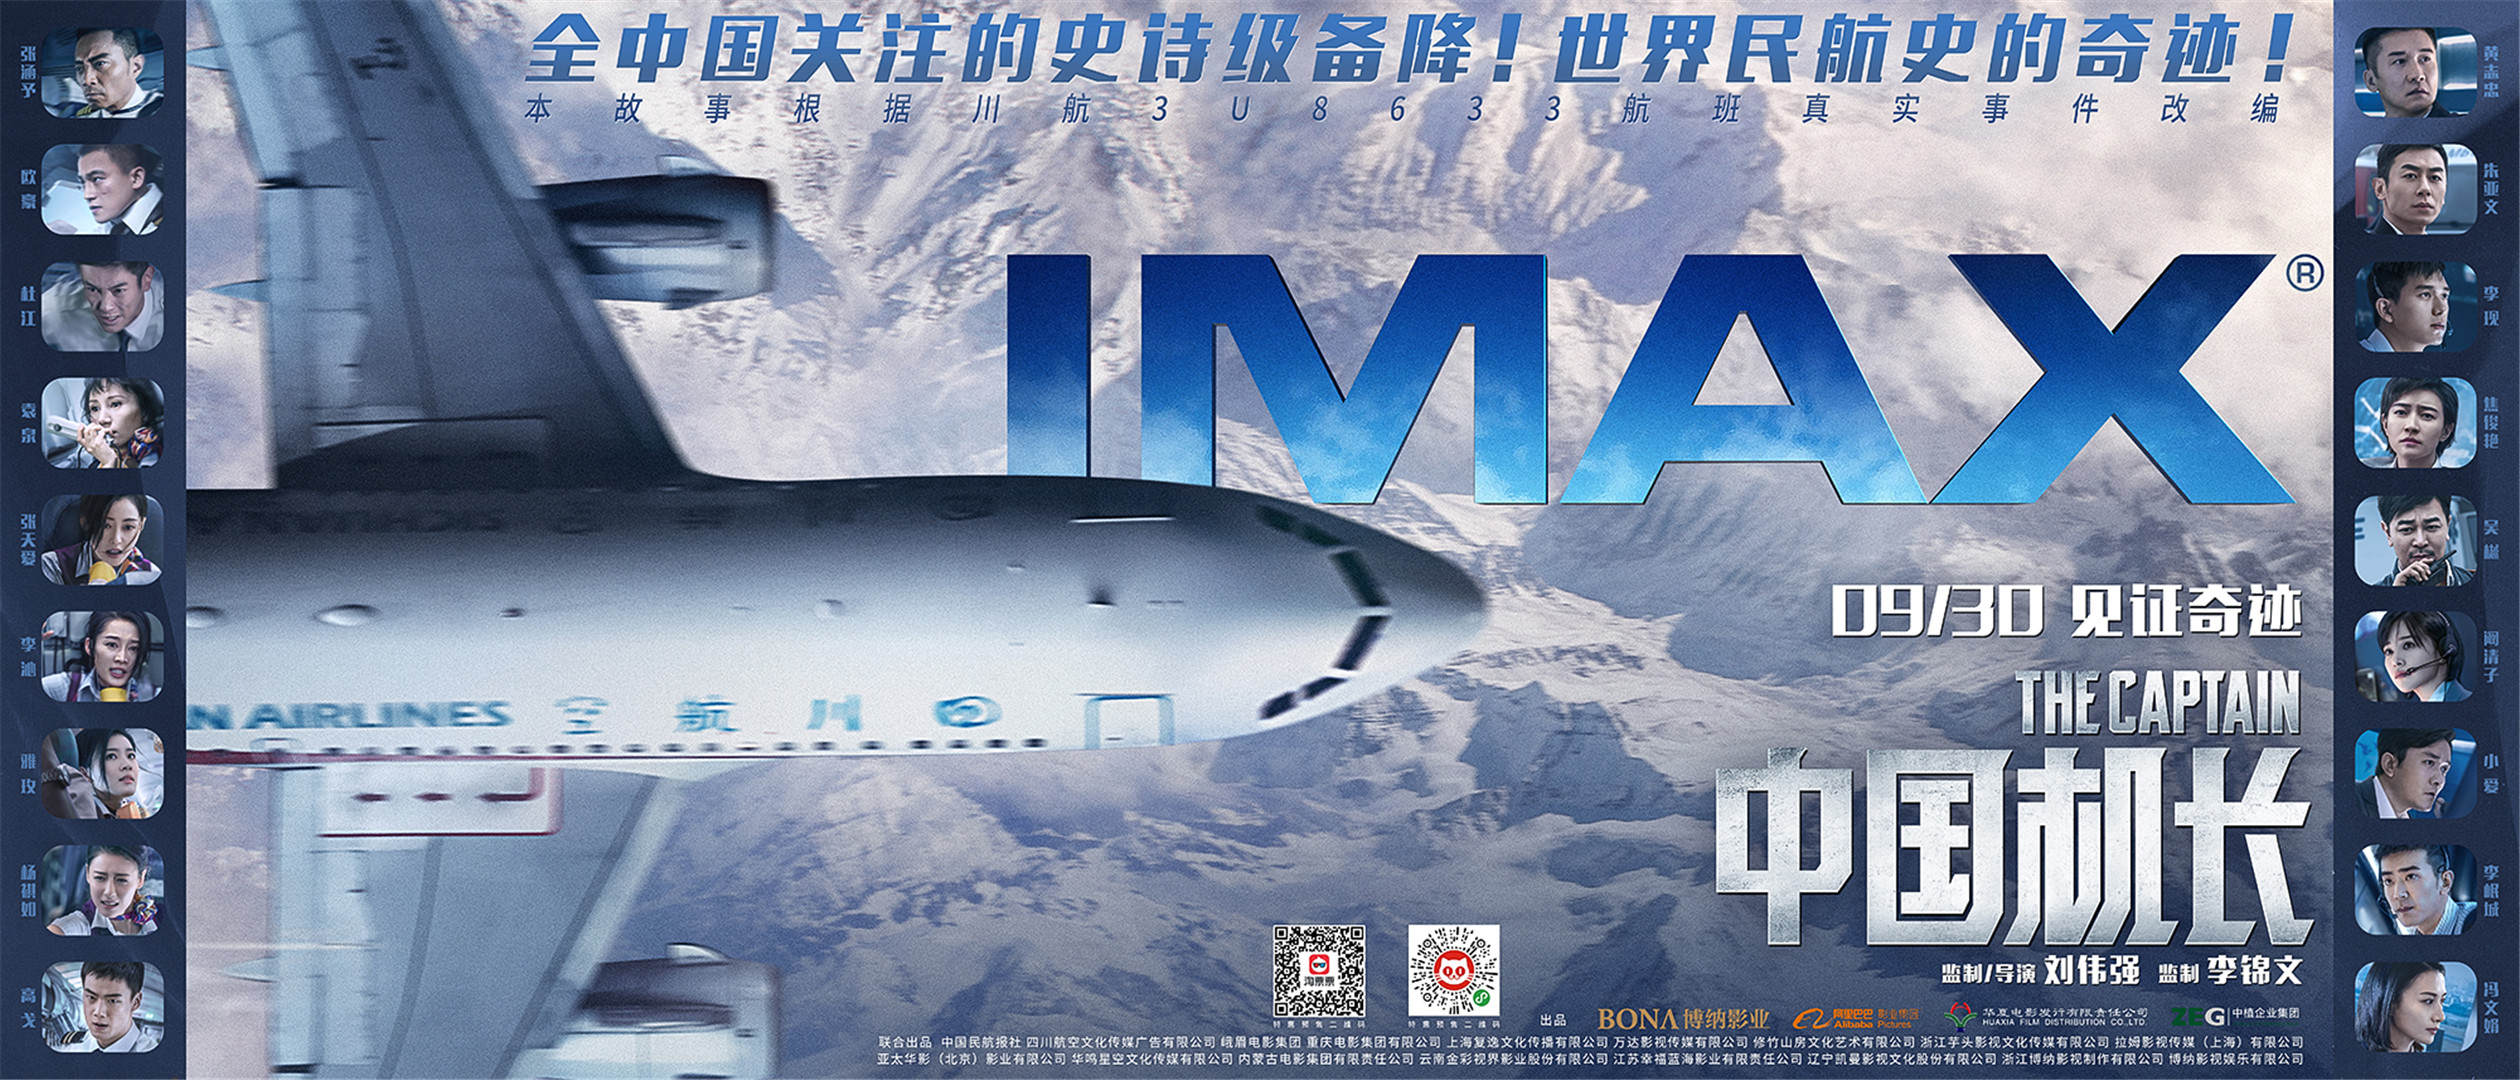 中国机长发imax版海报感受万米高空惊险瞬间